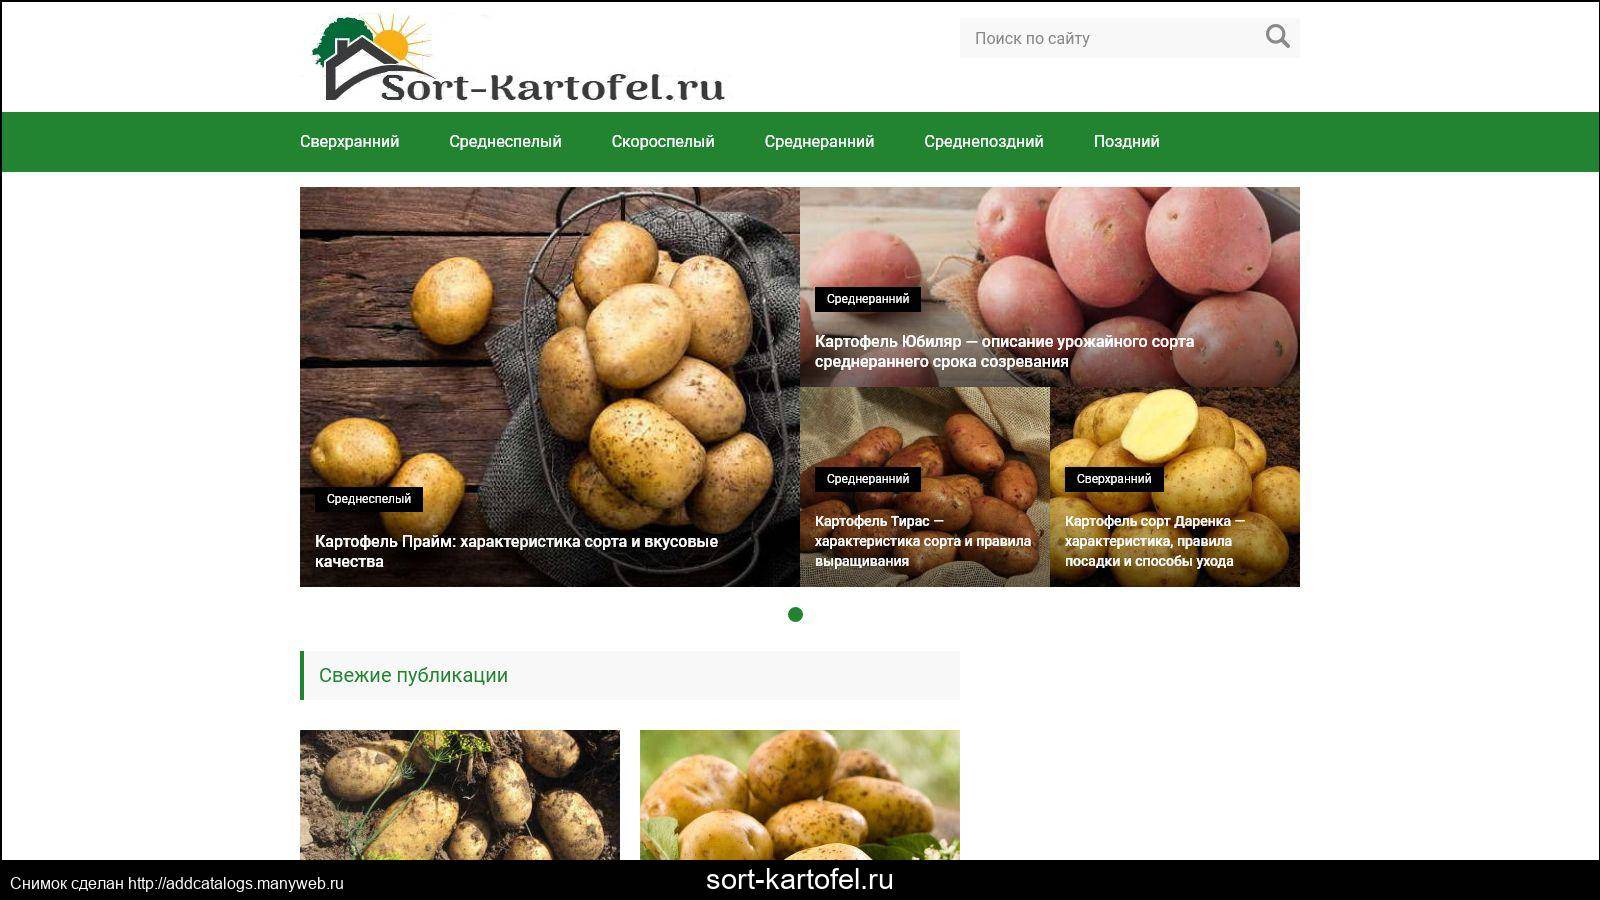 Картофель розара: описание сорта, фото, правила посадка, выращивания и ухода за клубнем